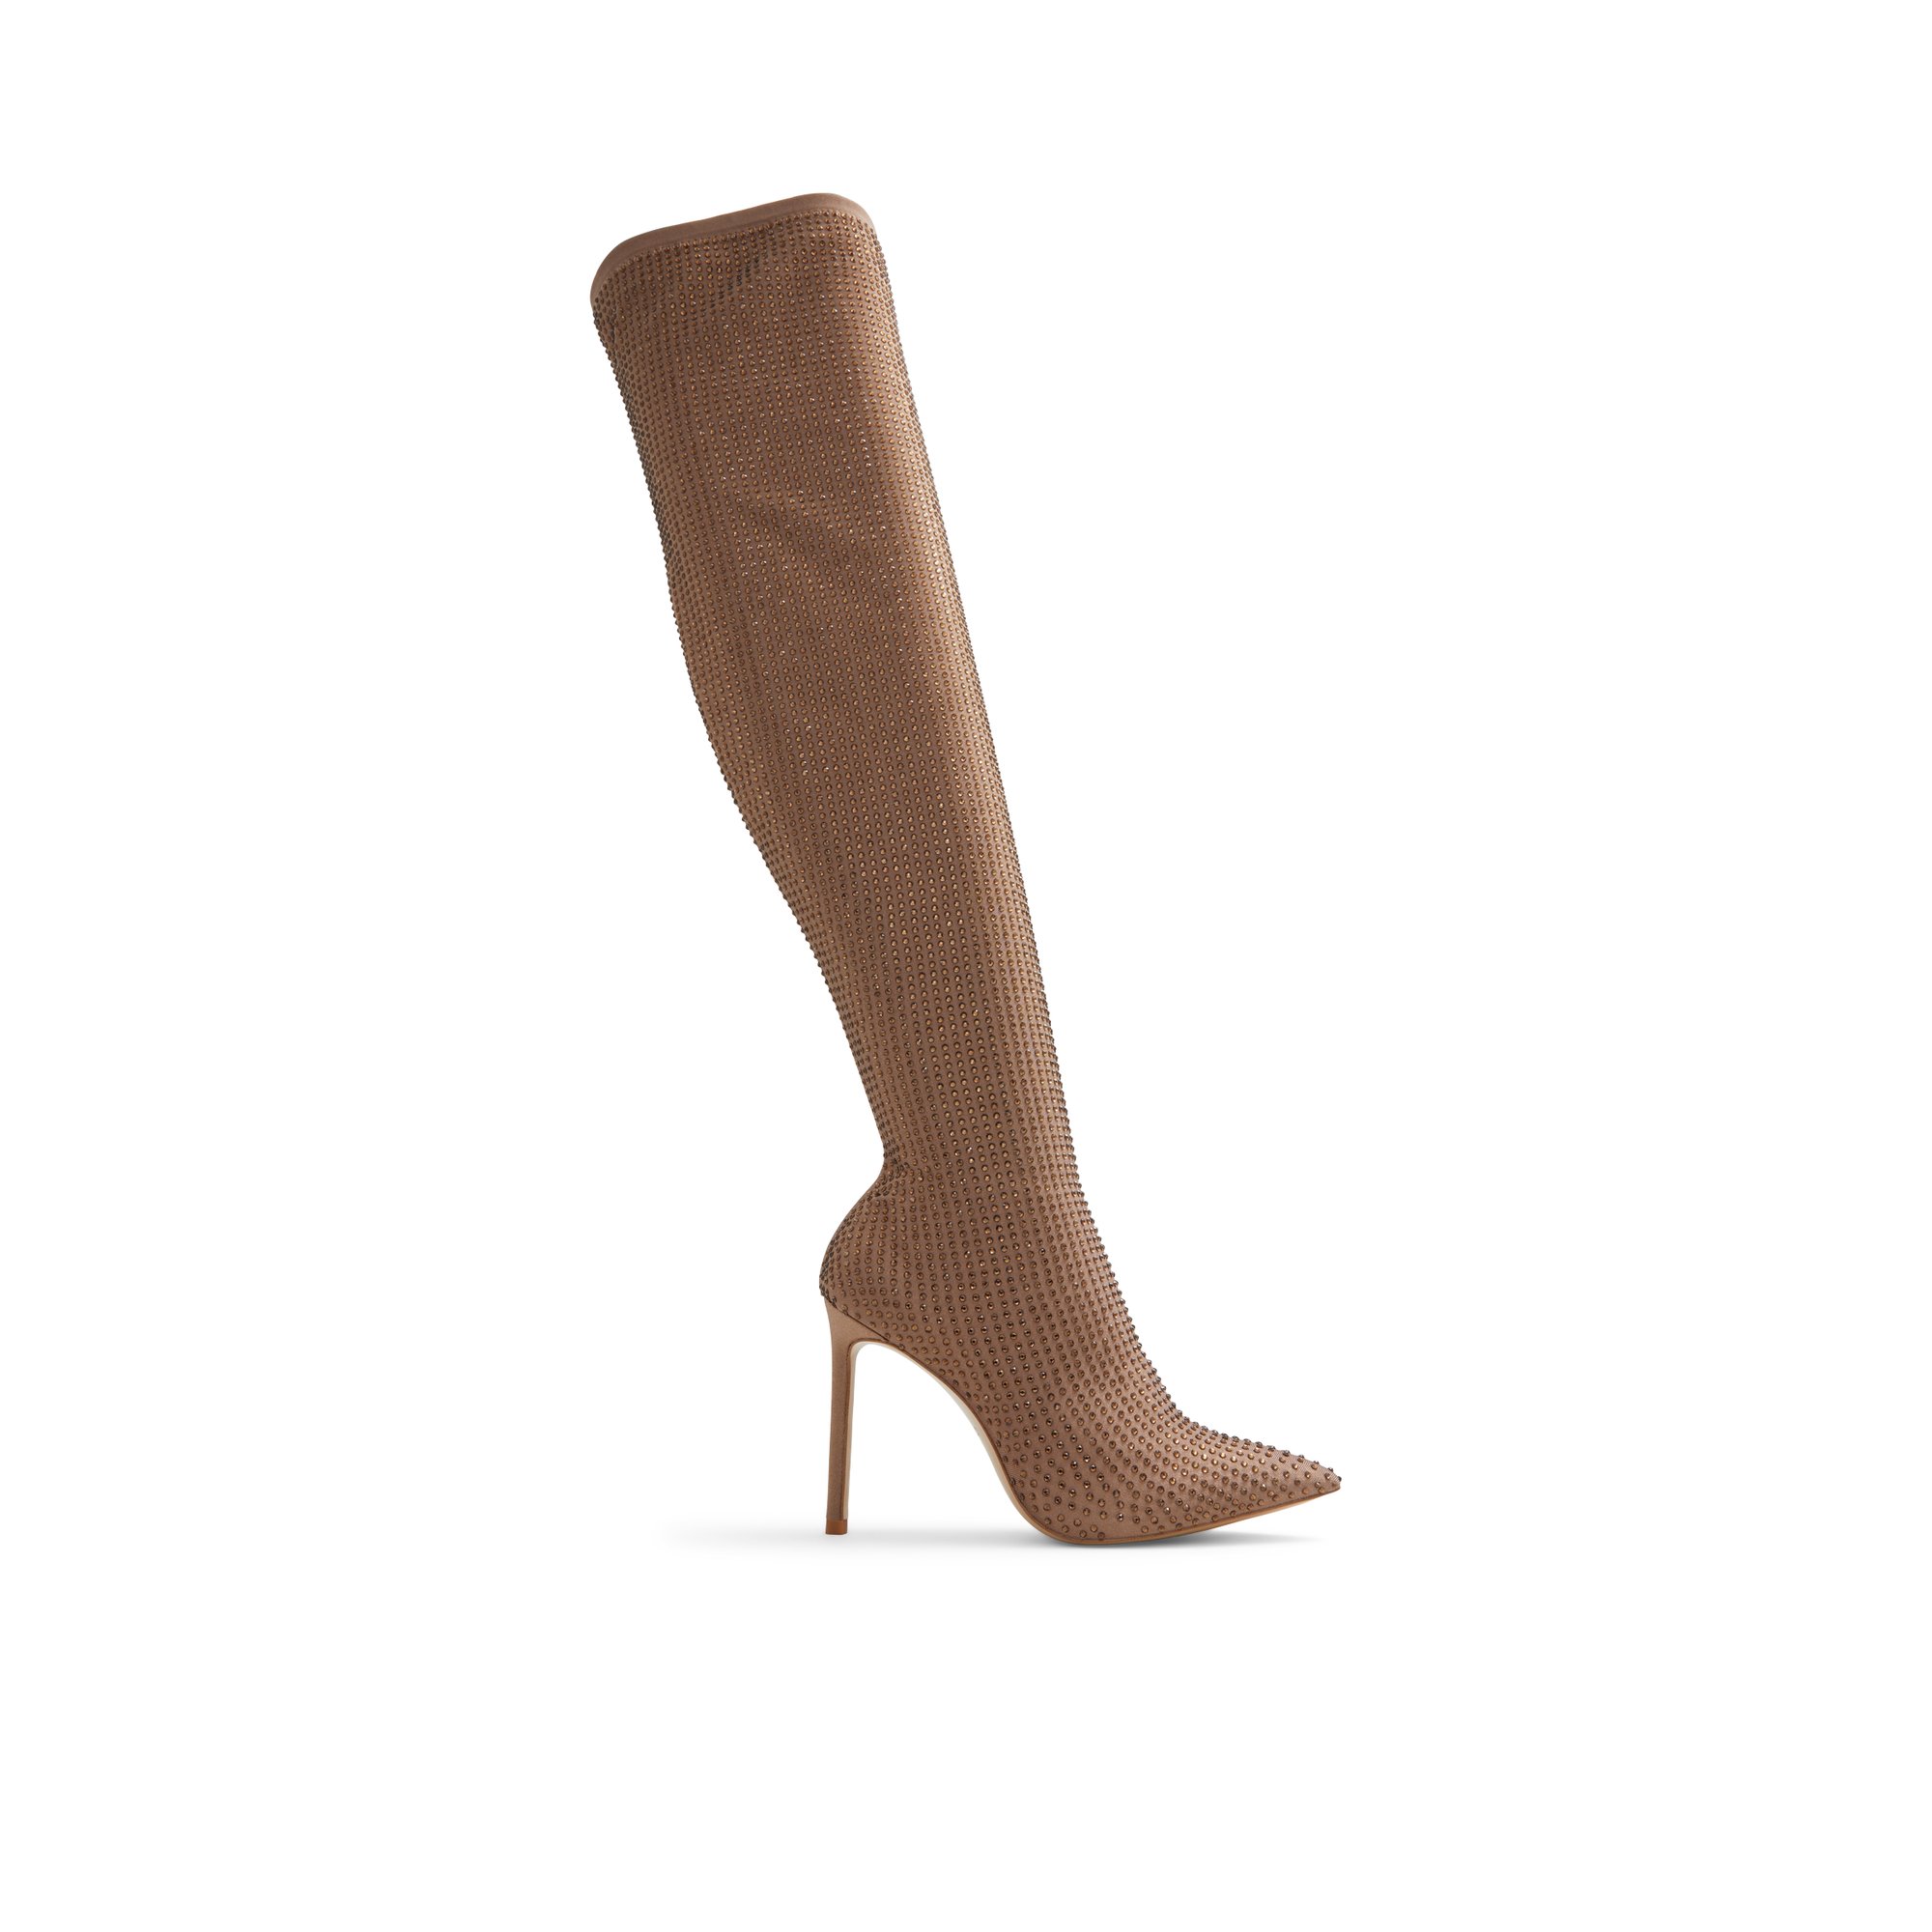 ALDO Nassia - Women's Boots Dress - Brown